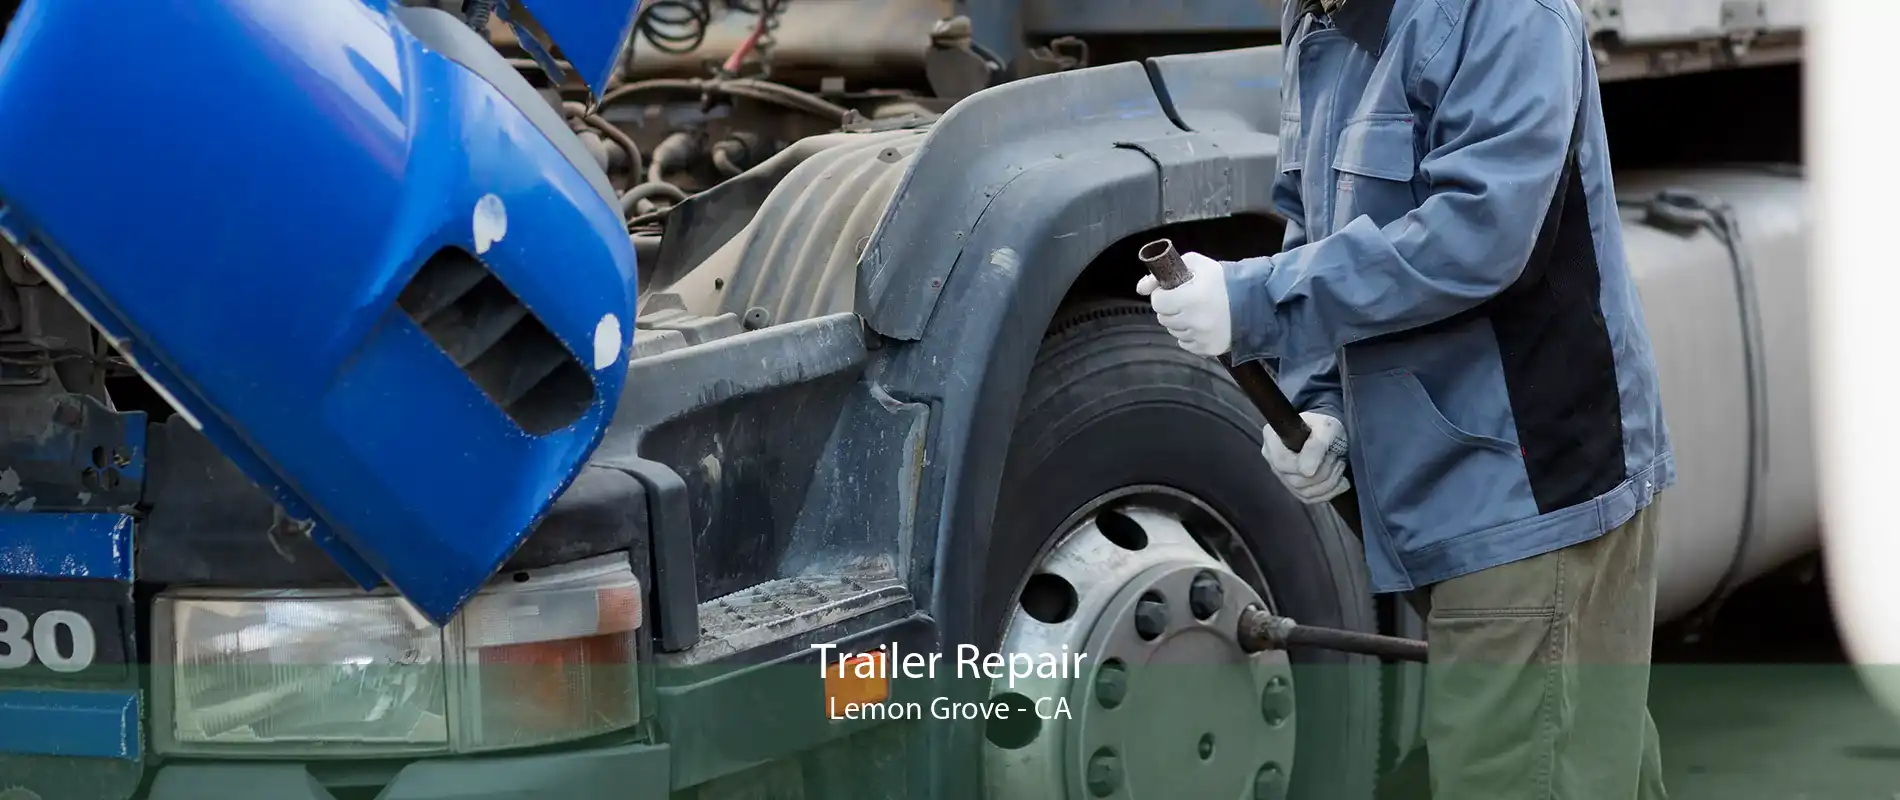 Trailer Repair Lemon Grove - CA